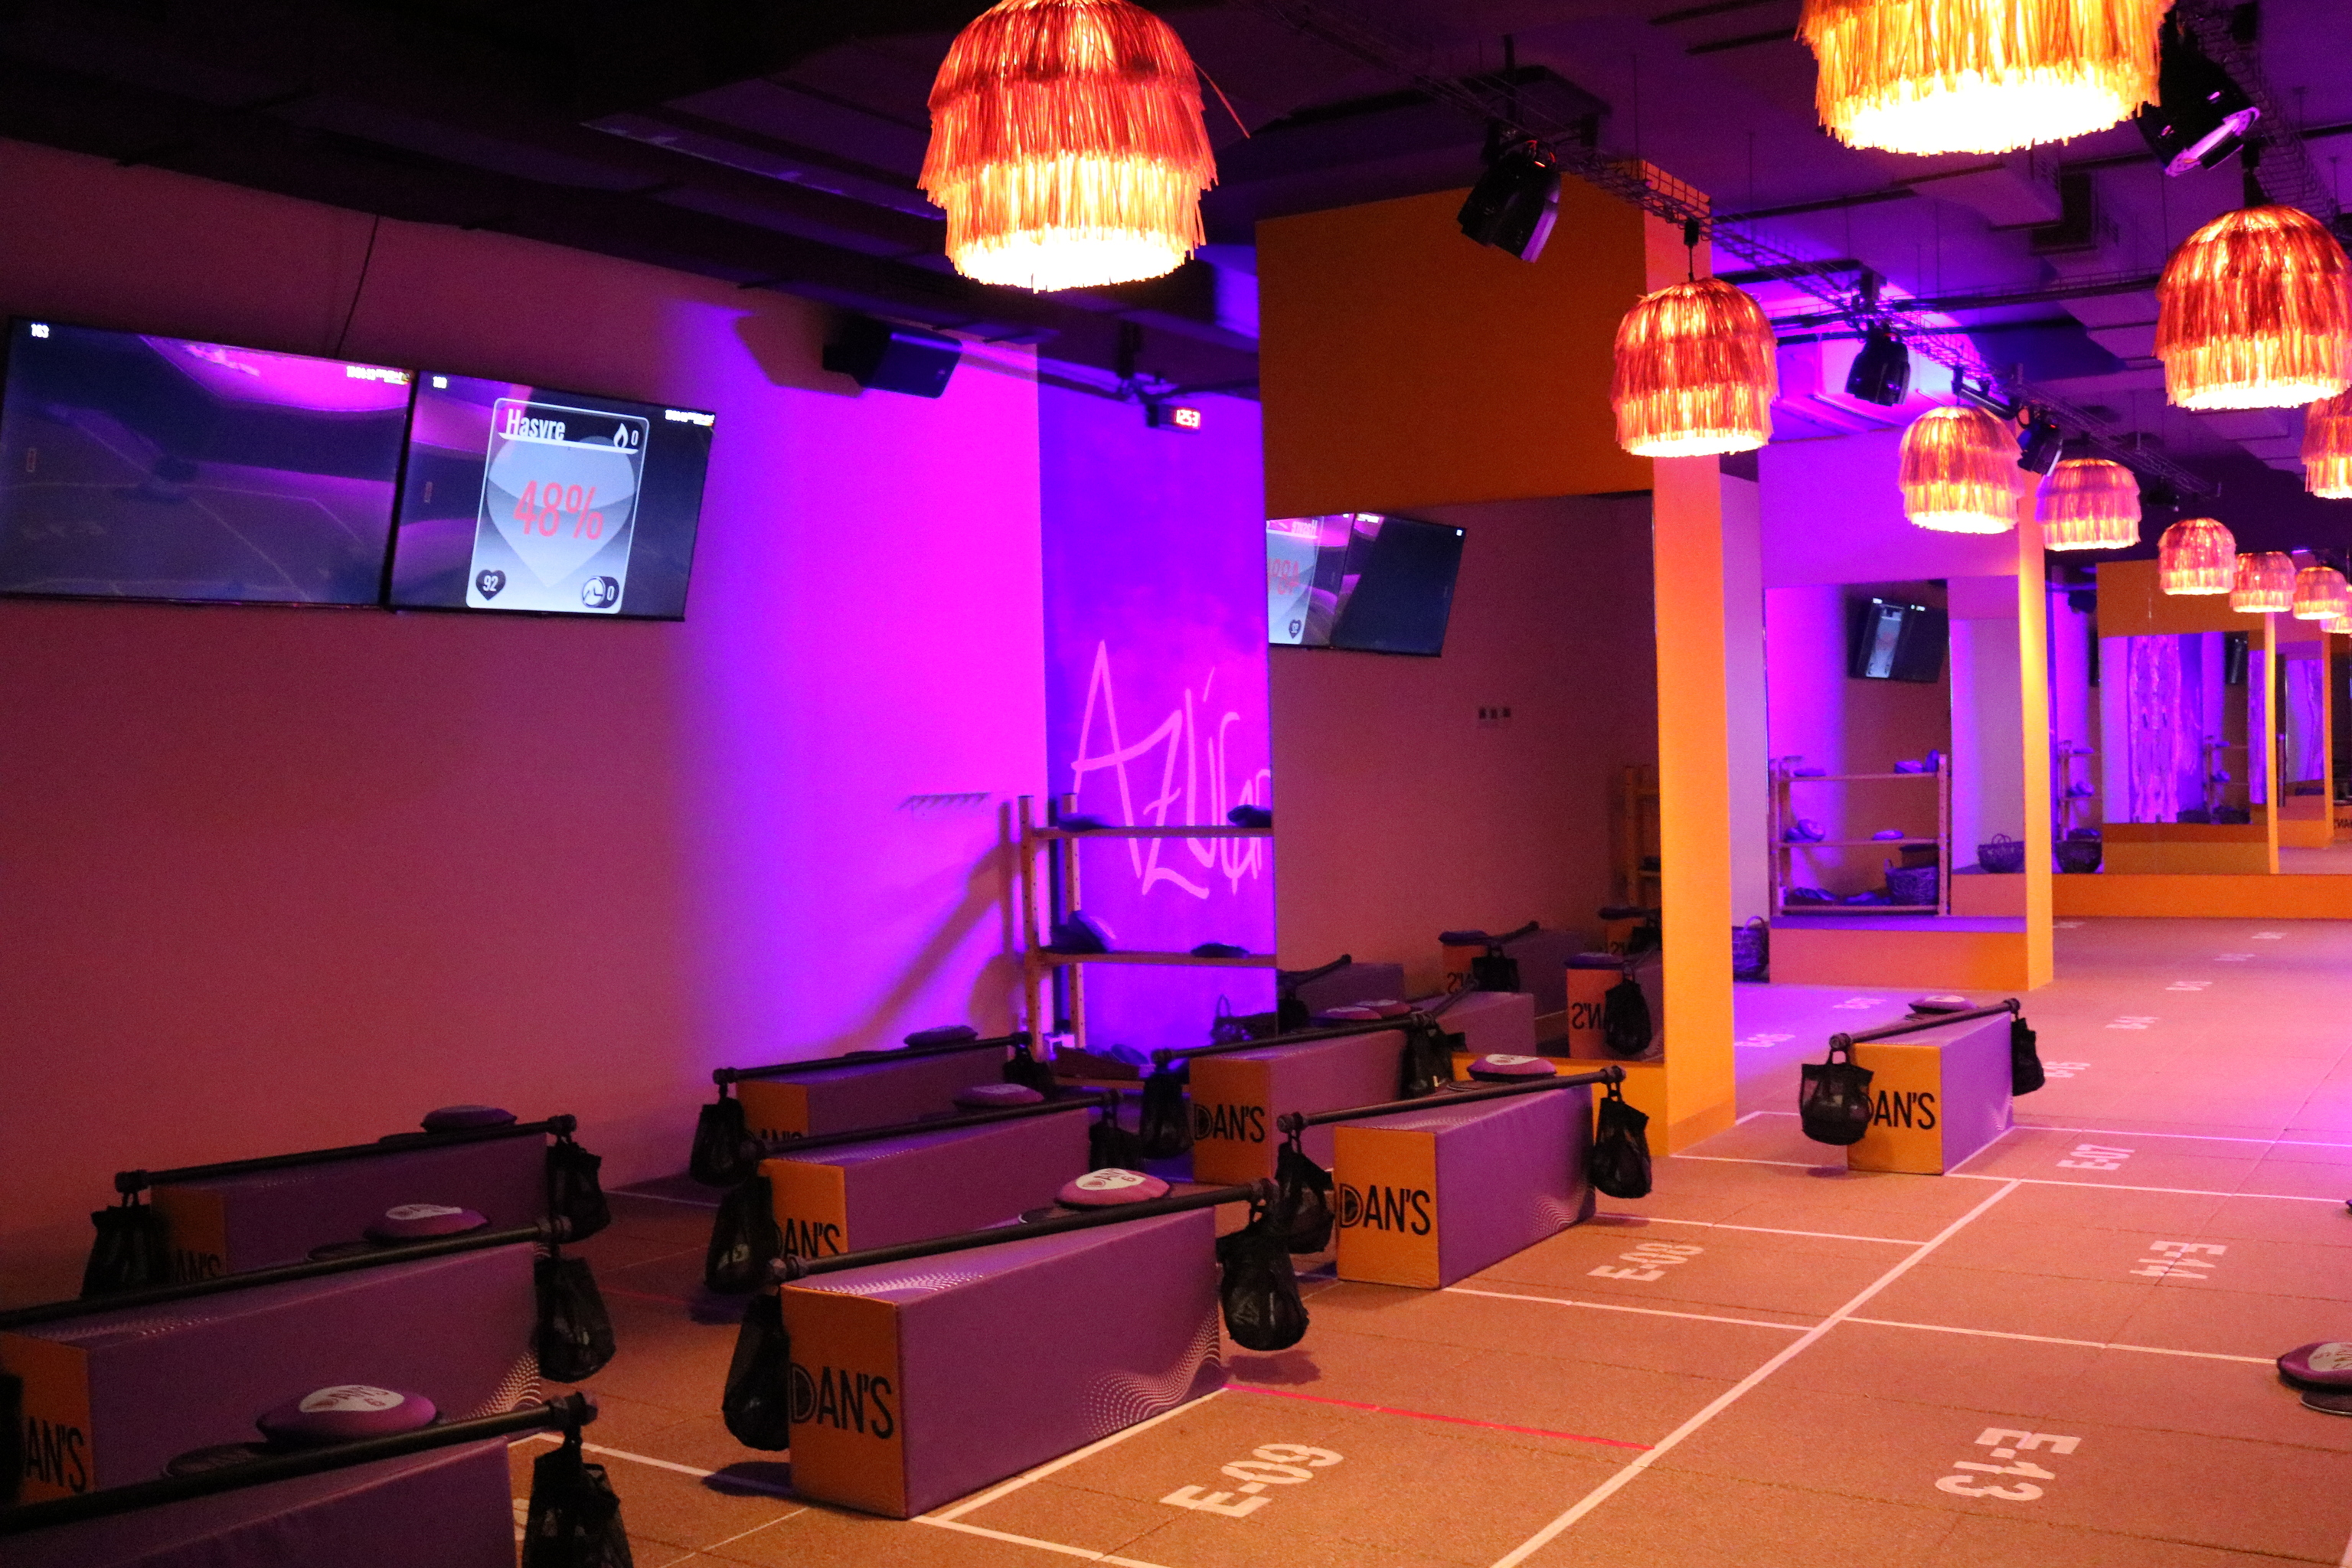 El local es una sala colorida con mural de Celia Cruz, una enorme tarima y sala fitness para entrenar la fuerza junto a la pista de baile.